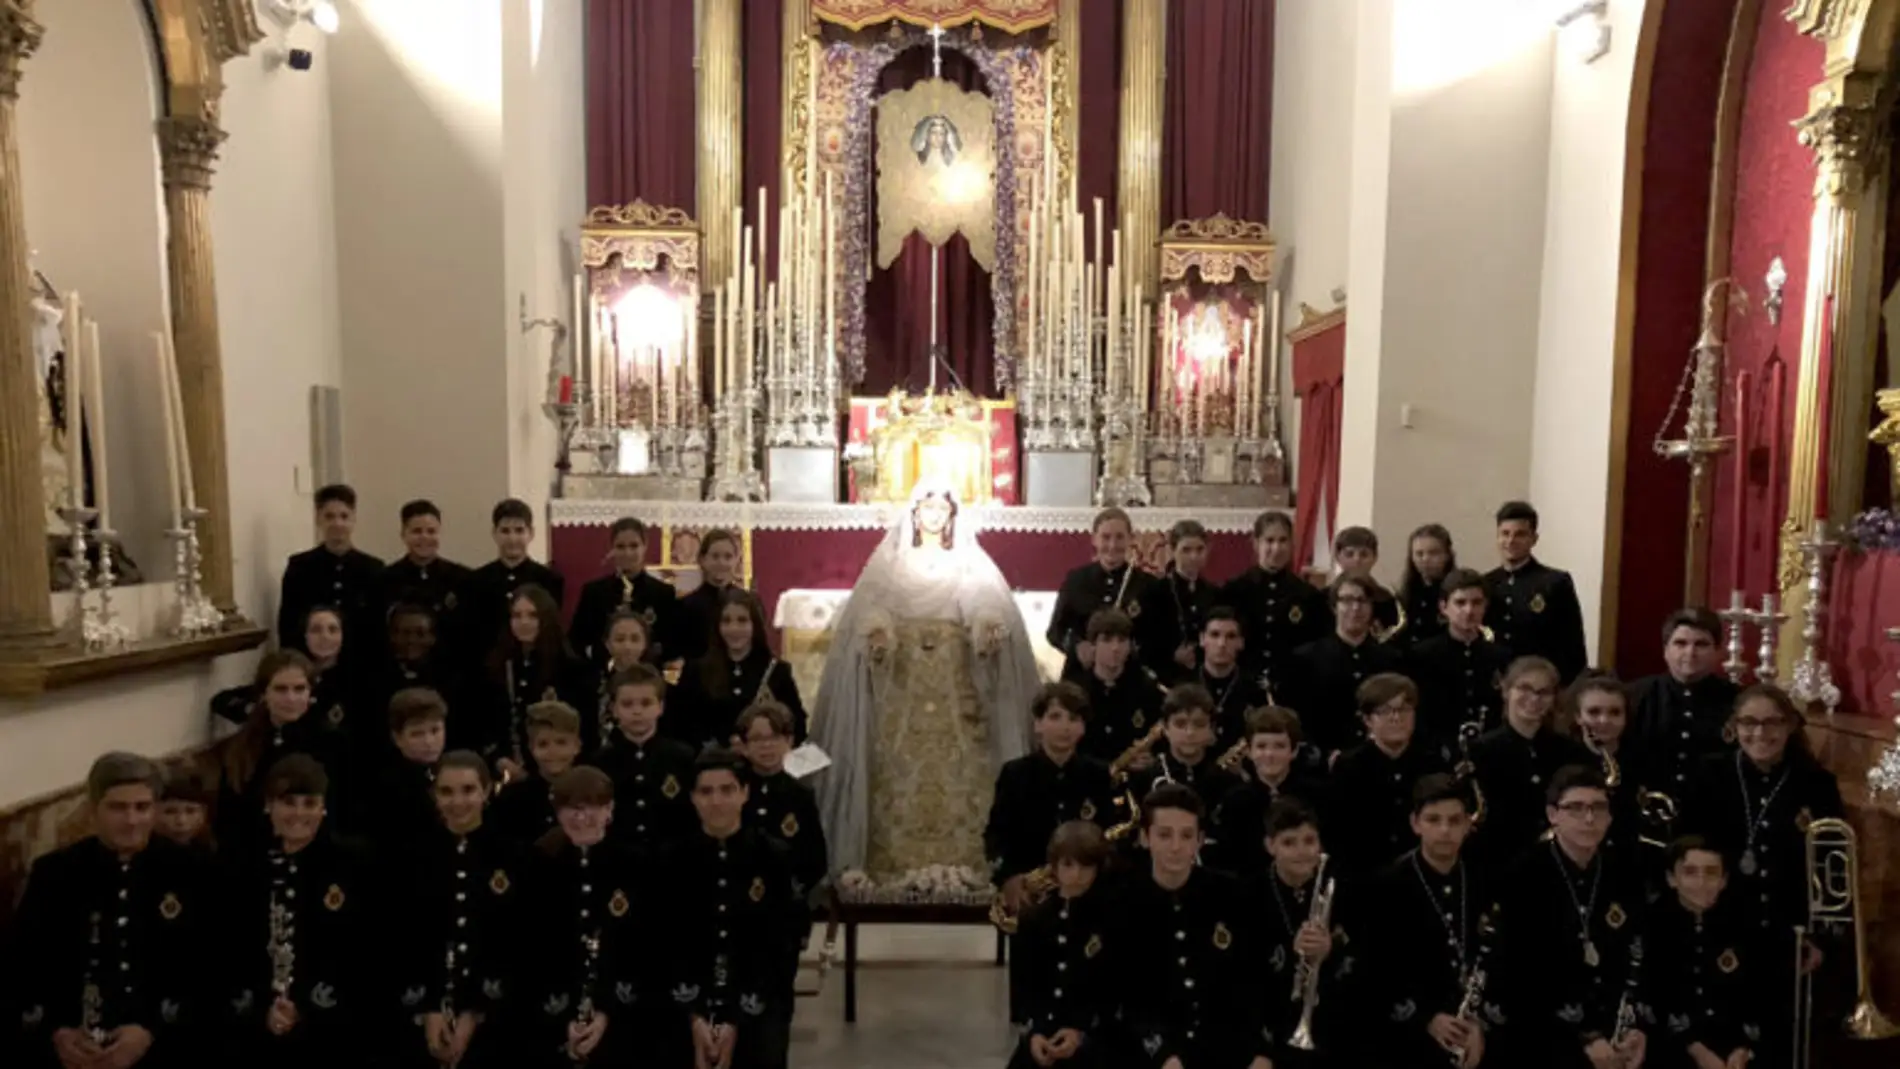 La Banda de Música “Virgen del Rocío” actuará en el pregón de la Semana Santa 